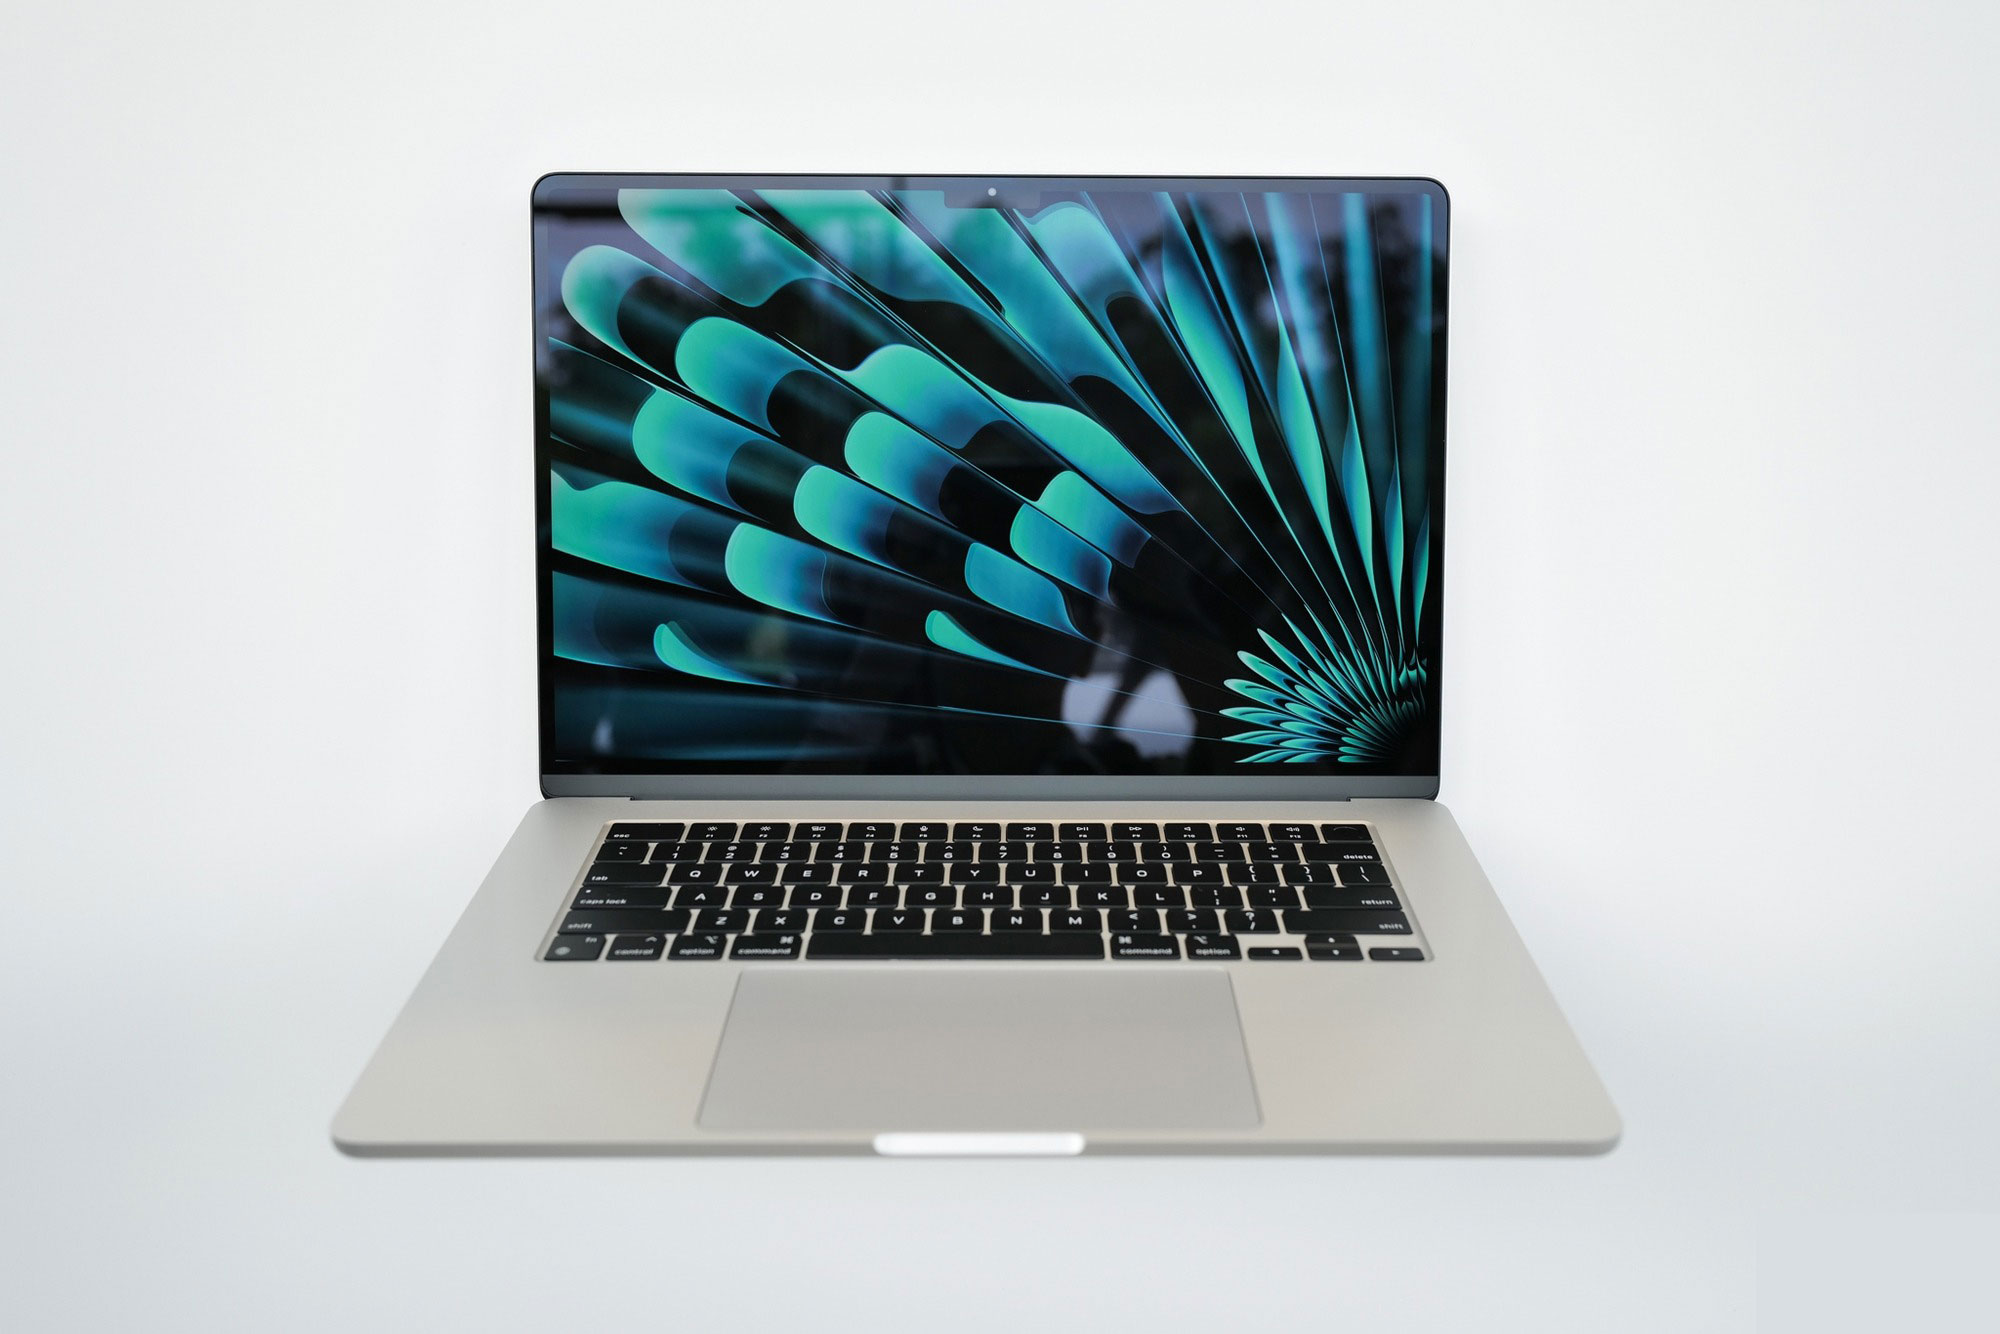 MacBook 15 inch mỏng nhẹ nhất của Apple, giá chính hãng chỉ 32,99 triệu đồng